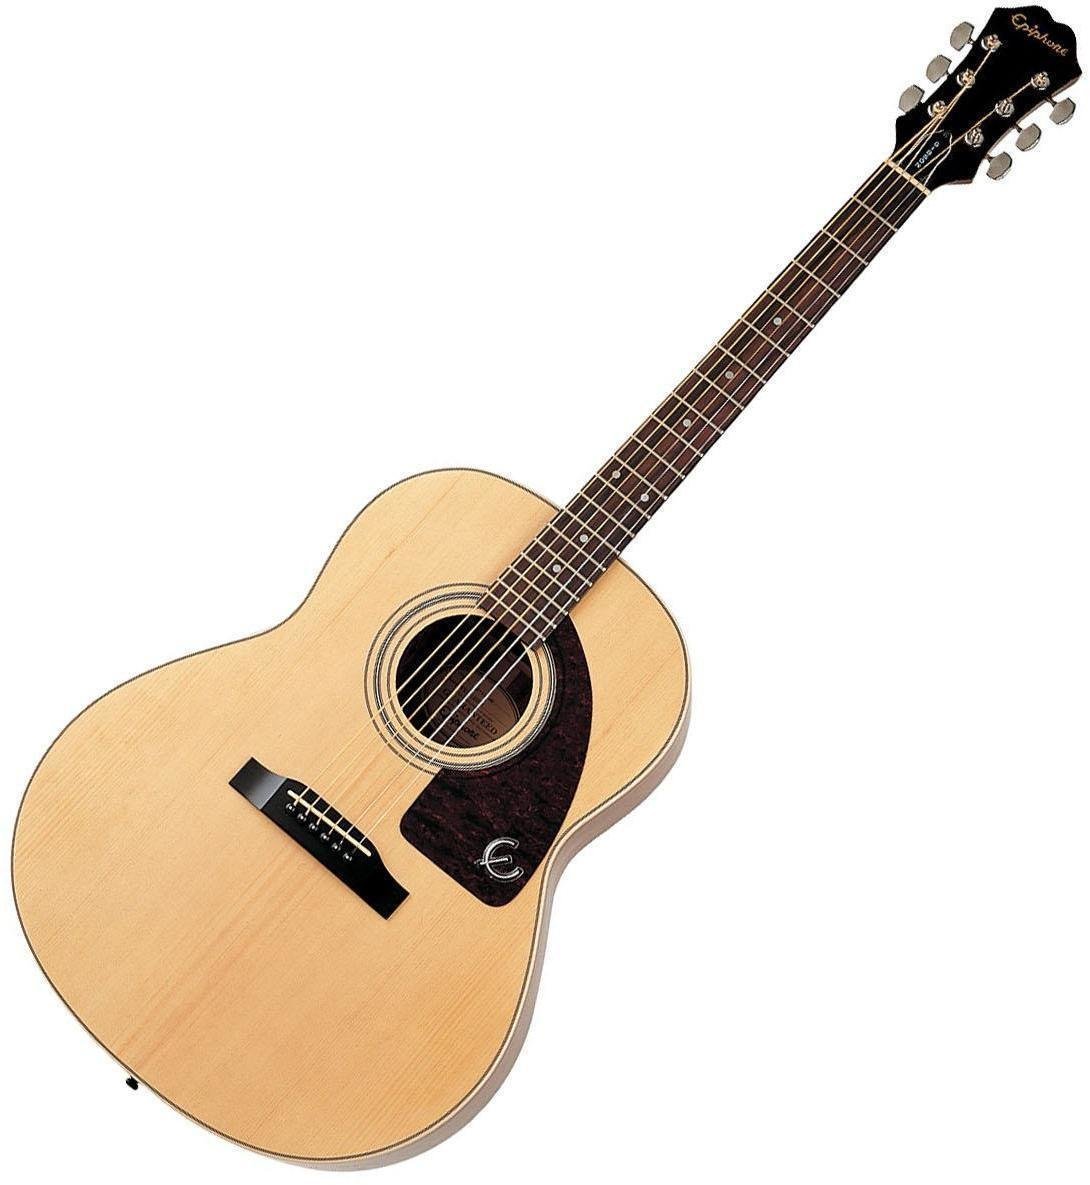 Jumbo akustična gitara Epiphone AJ 200 S NA